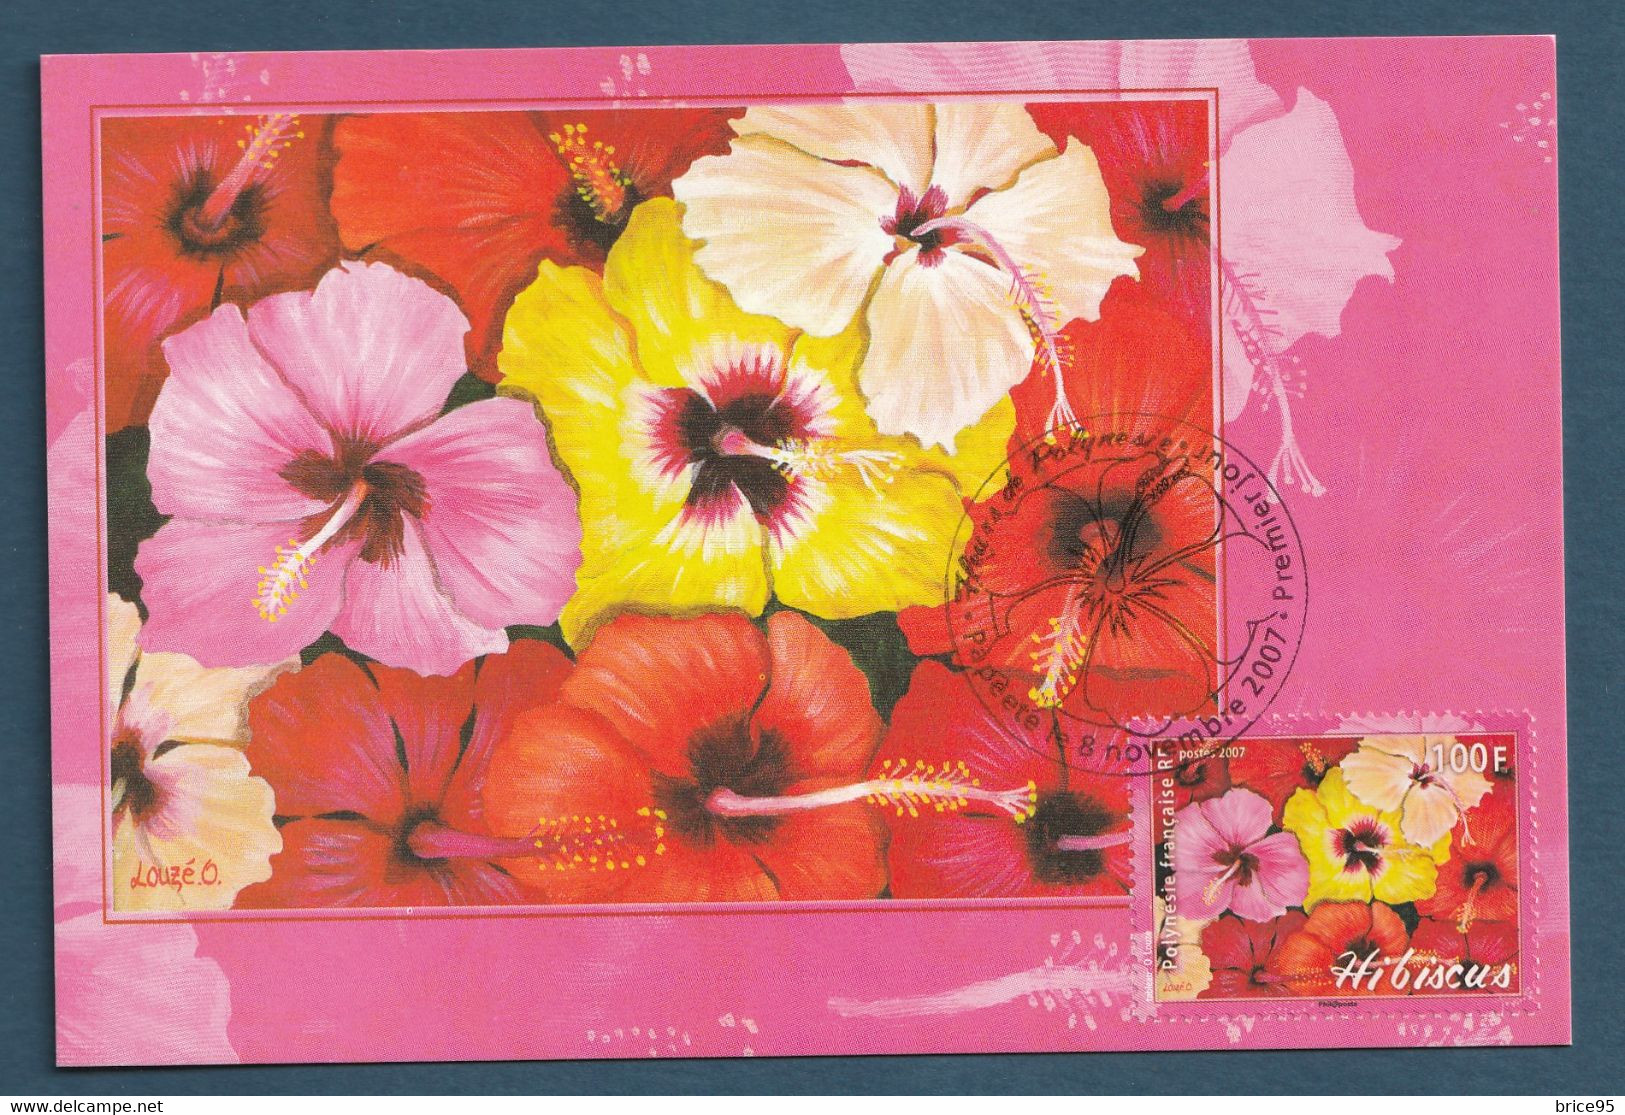 ⭐ Polynésie Française - Carte Maximum - Premier Jour - FDC - Hibicus - 2007 ⭐ - Maximum Cards